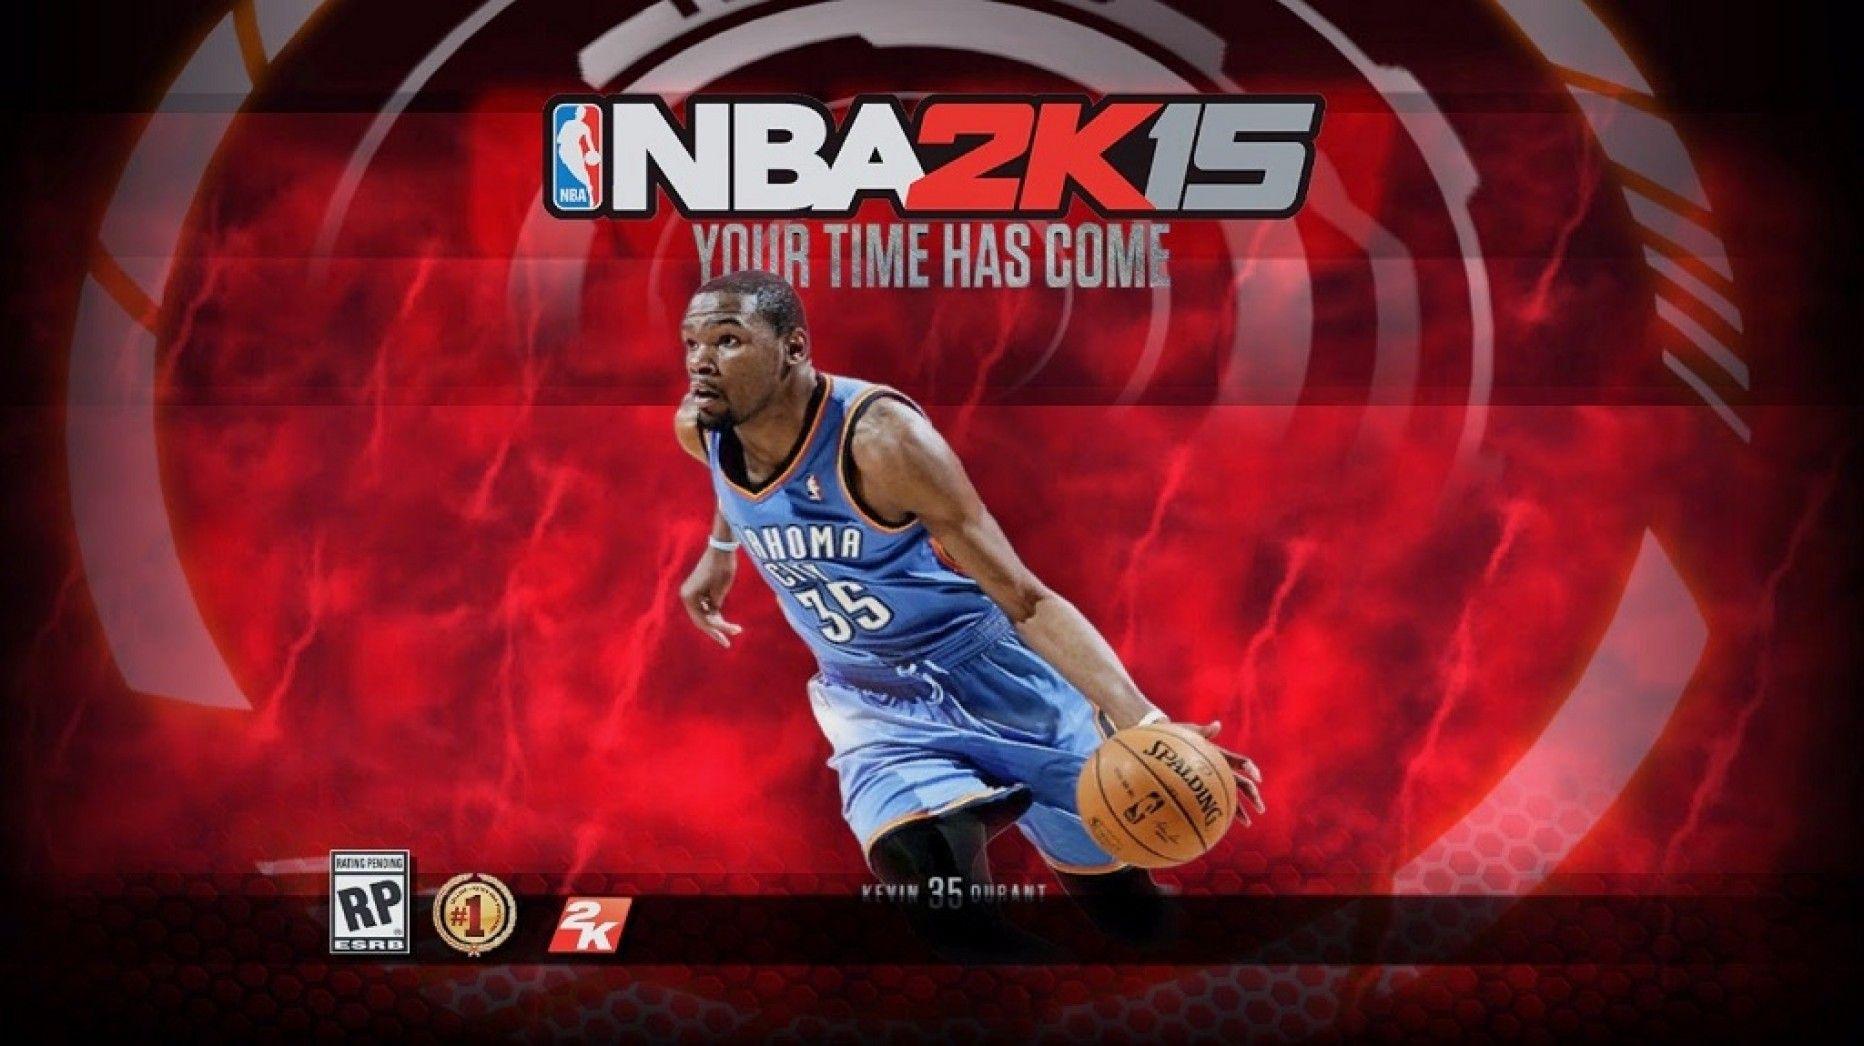 PS3 NBA 2K16 Wallpaper